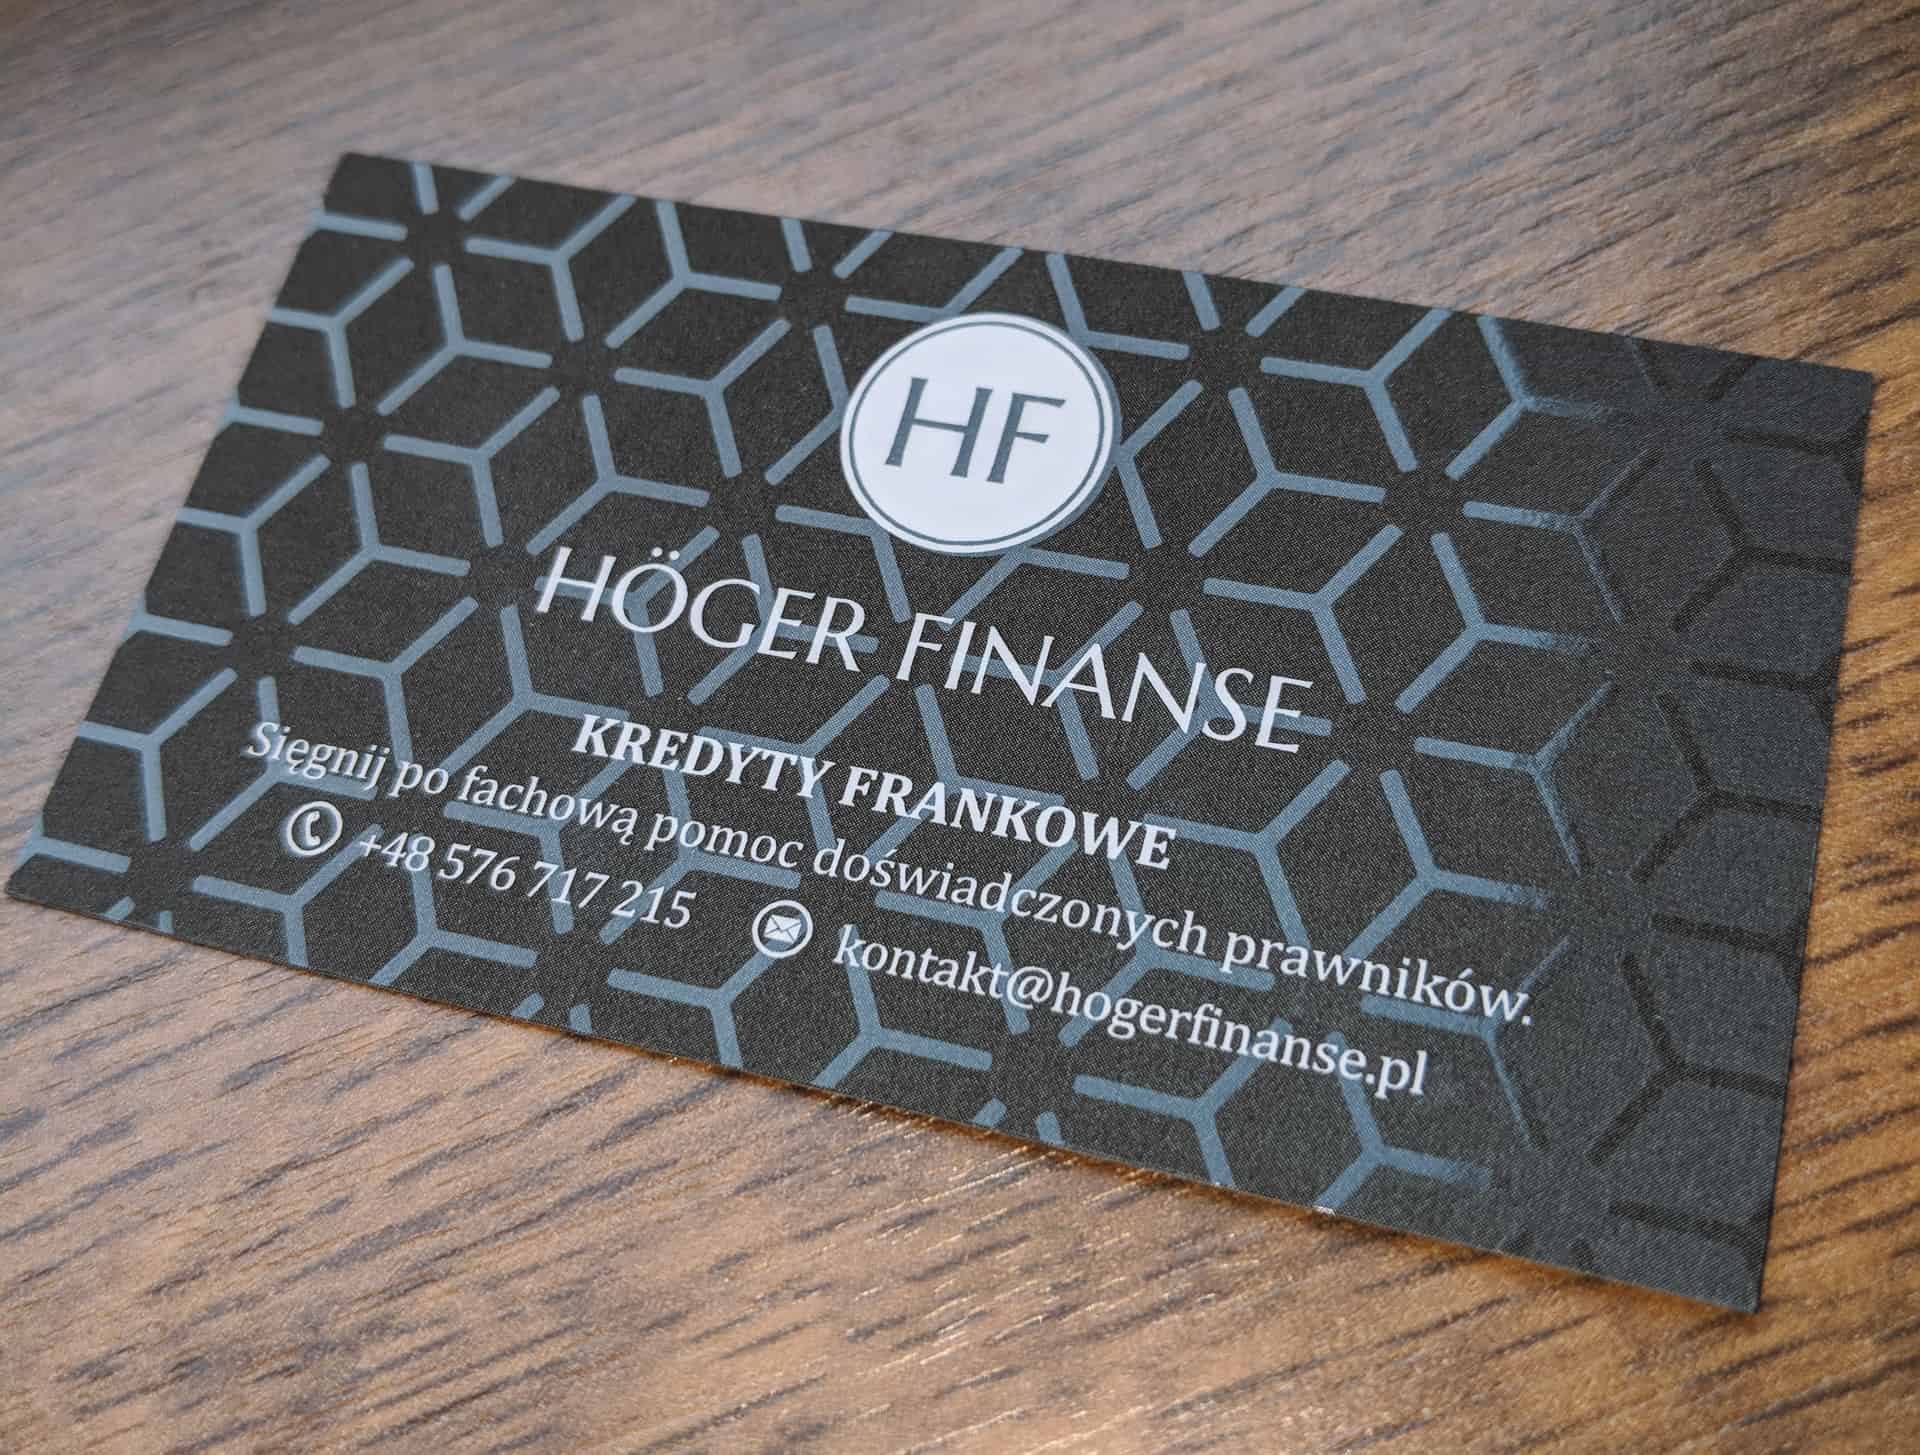 Piękne wizytówki z błyszczącymi elementami dla HF Hoger Finanse